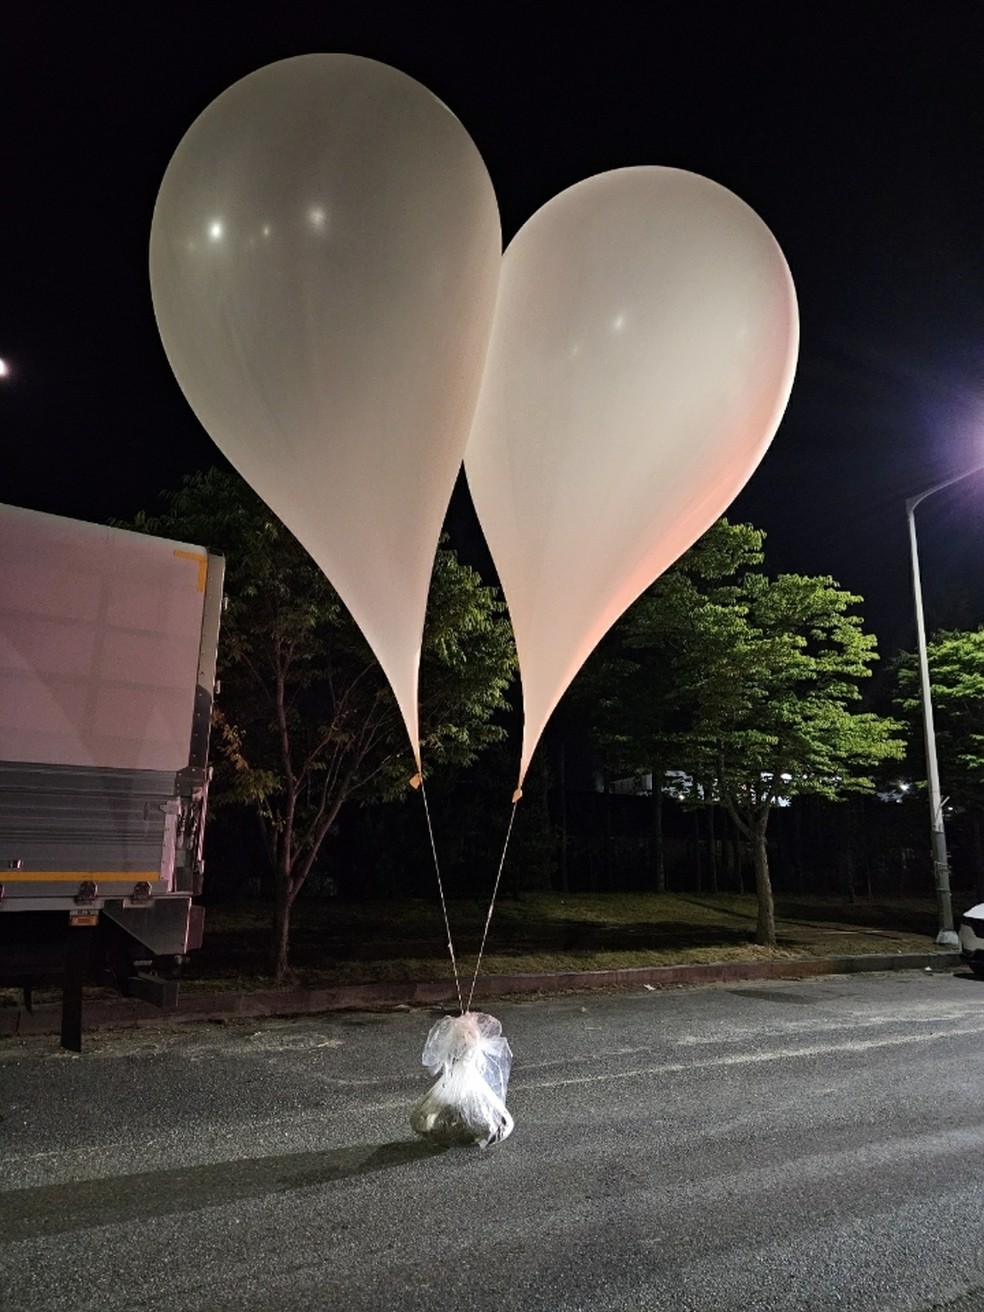 Coreia do Sul recebeu balões com lixo e fezes enviados da Coreia do Norte, segundo militares — Foto: Yonhap via Reuters